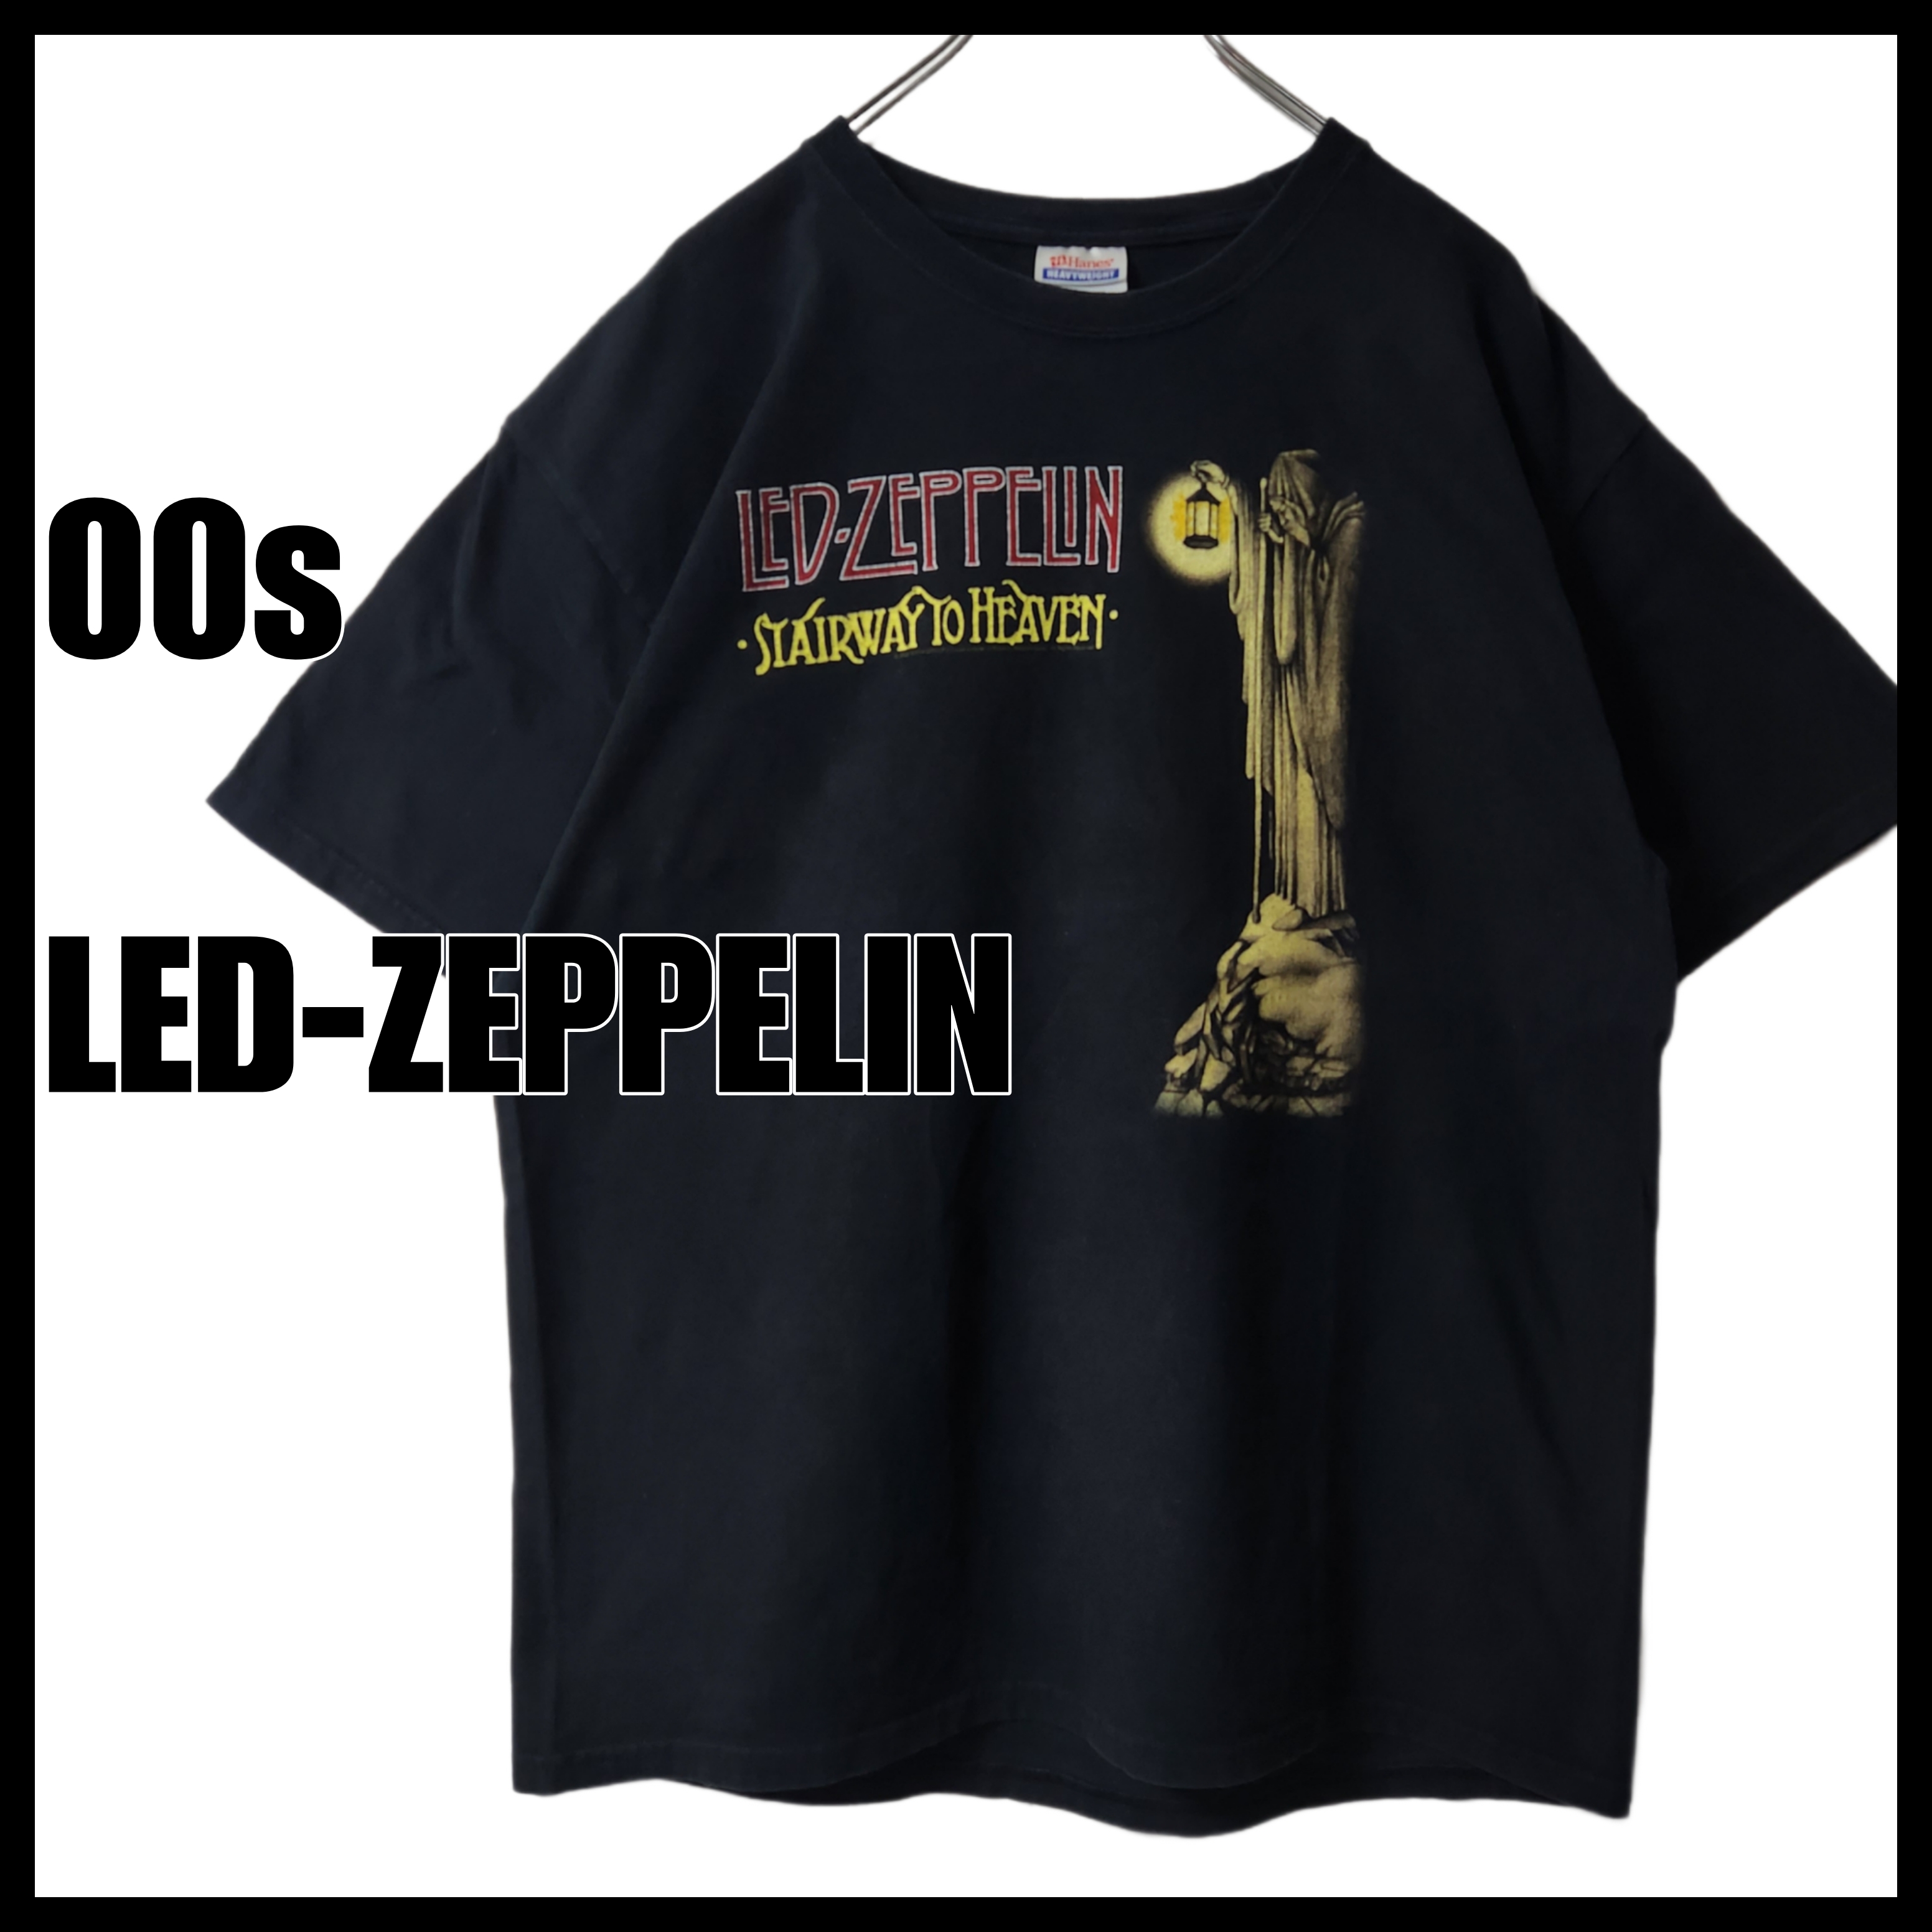 00s Led Zeppelin レッドツェッペリン 1st 飛行船 Tシャツ